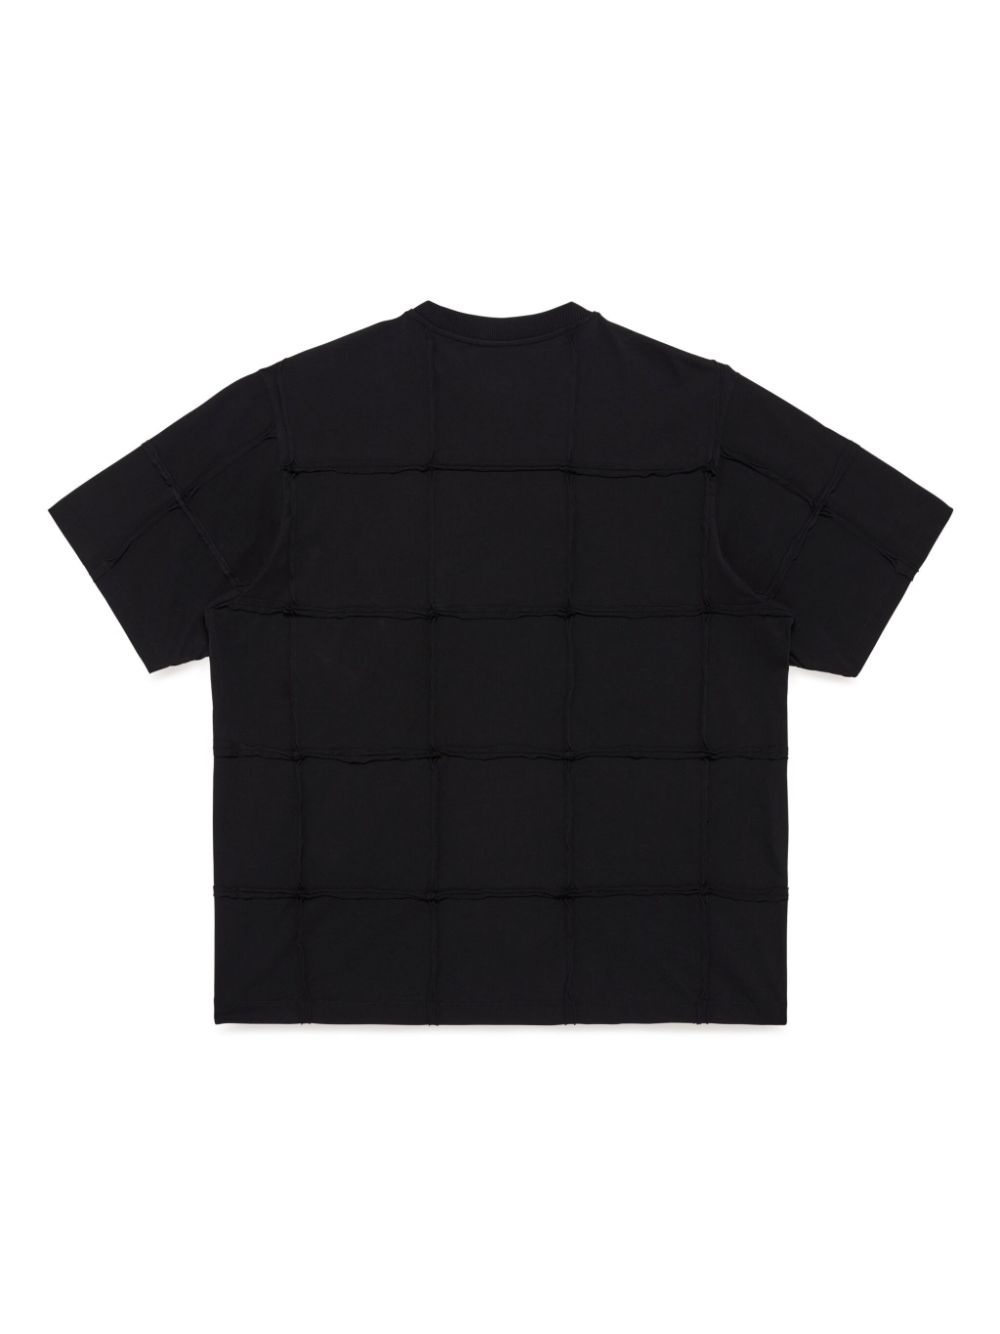 Cross Inside Out T-shirt - 2